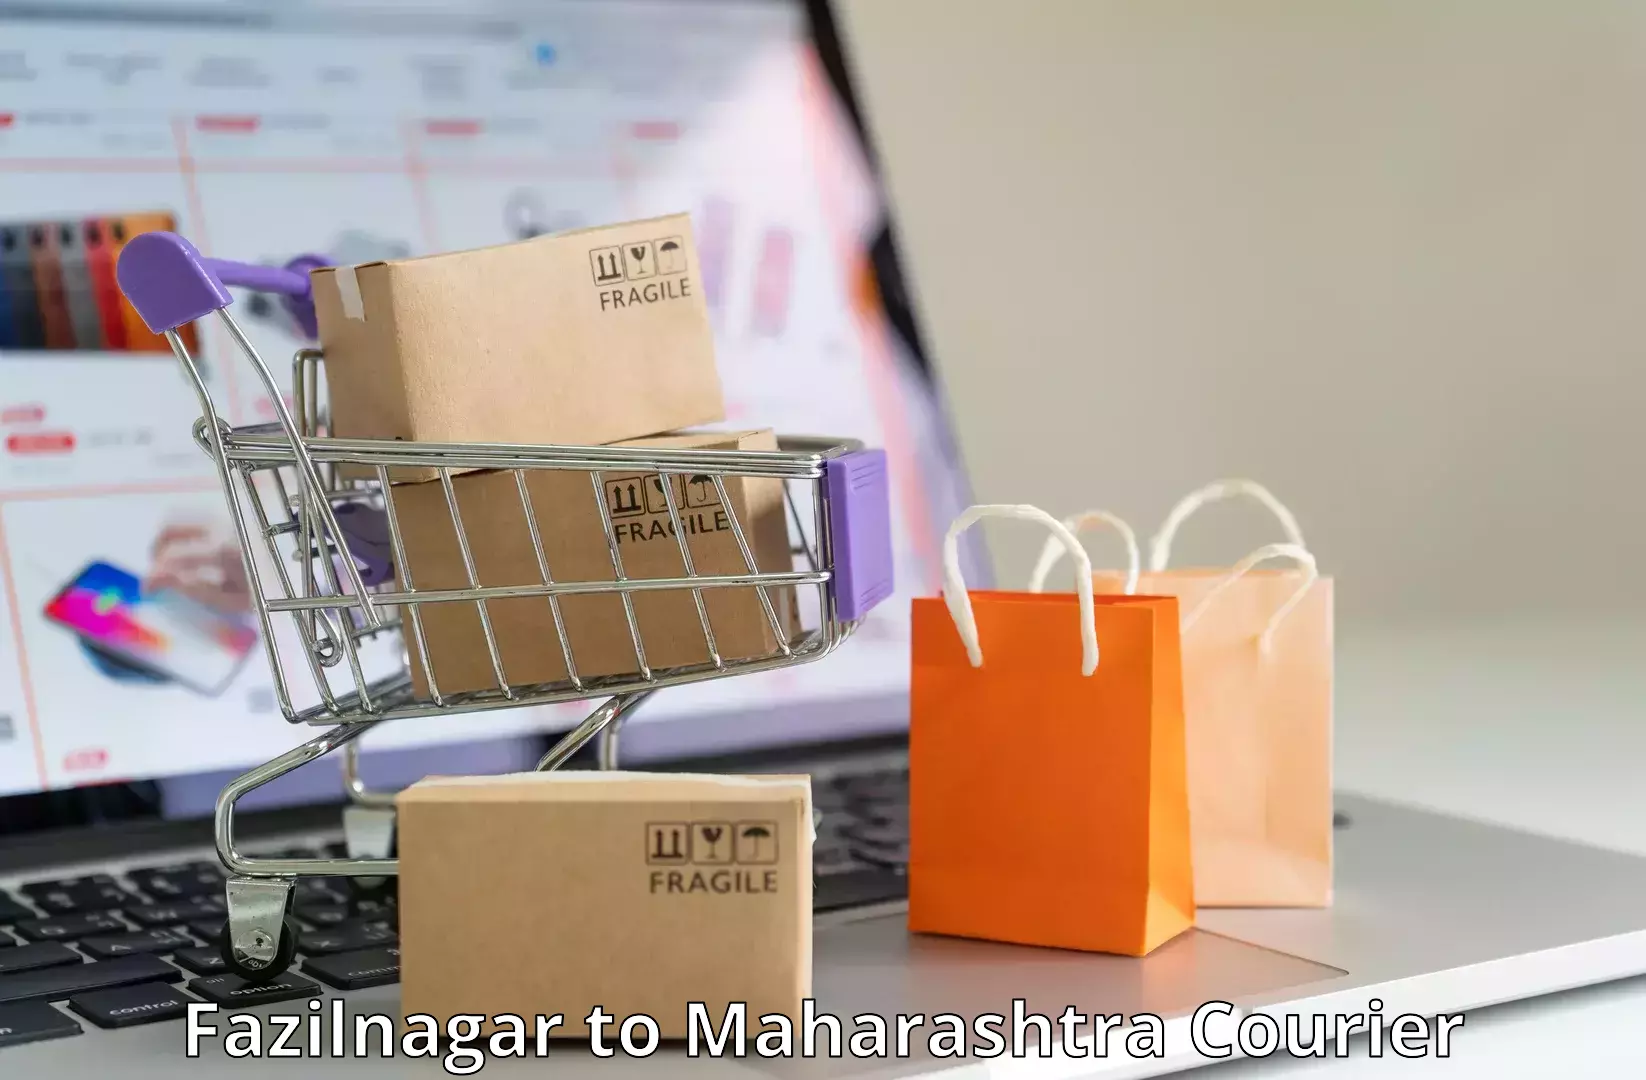 International courier networks Fazilnagar to Aurangabad